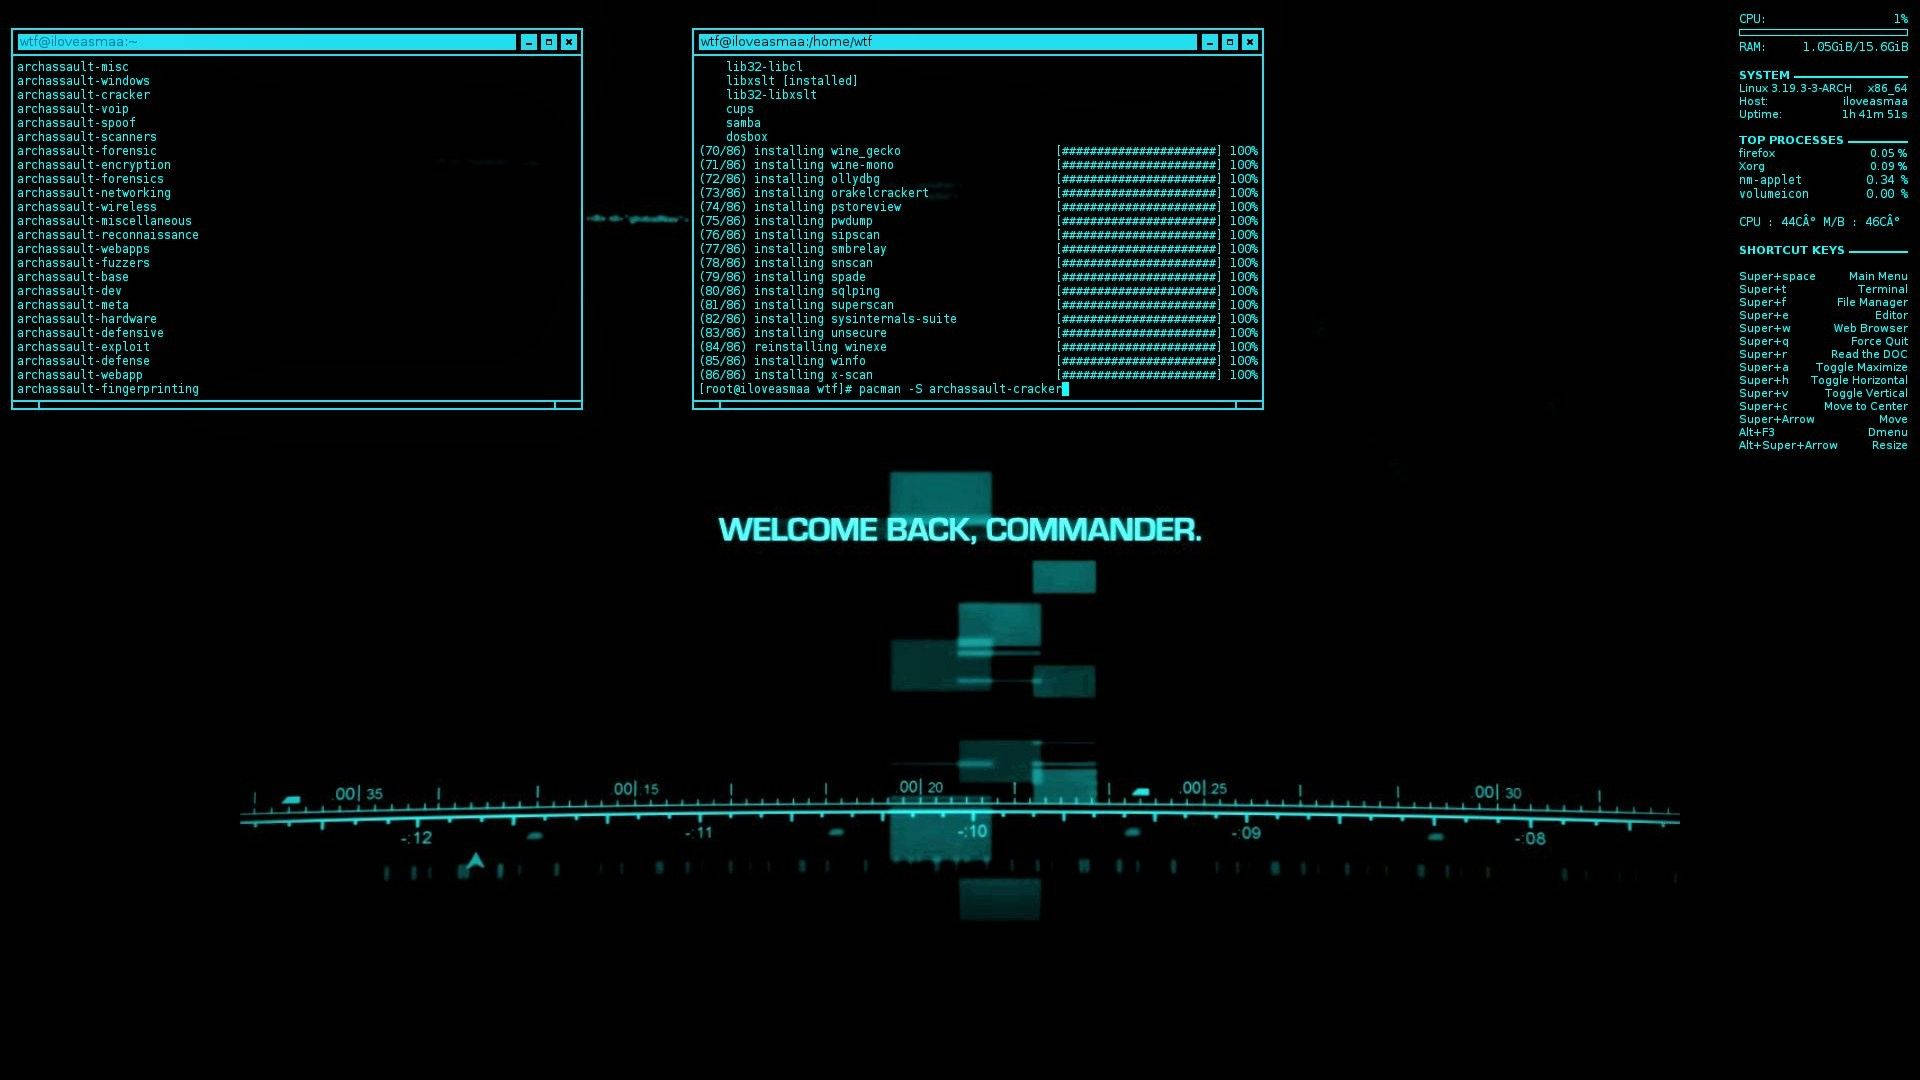 Hacker Screen Full Hd Wallpaper